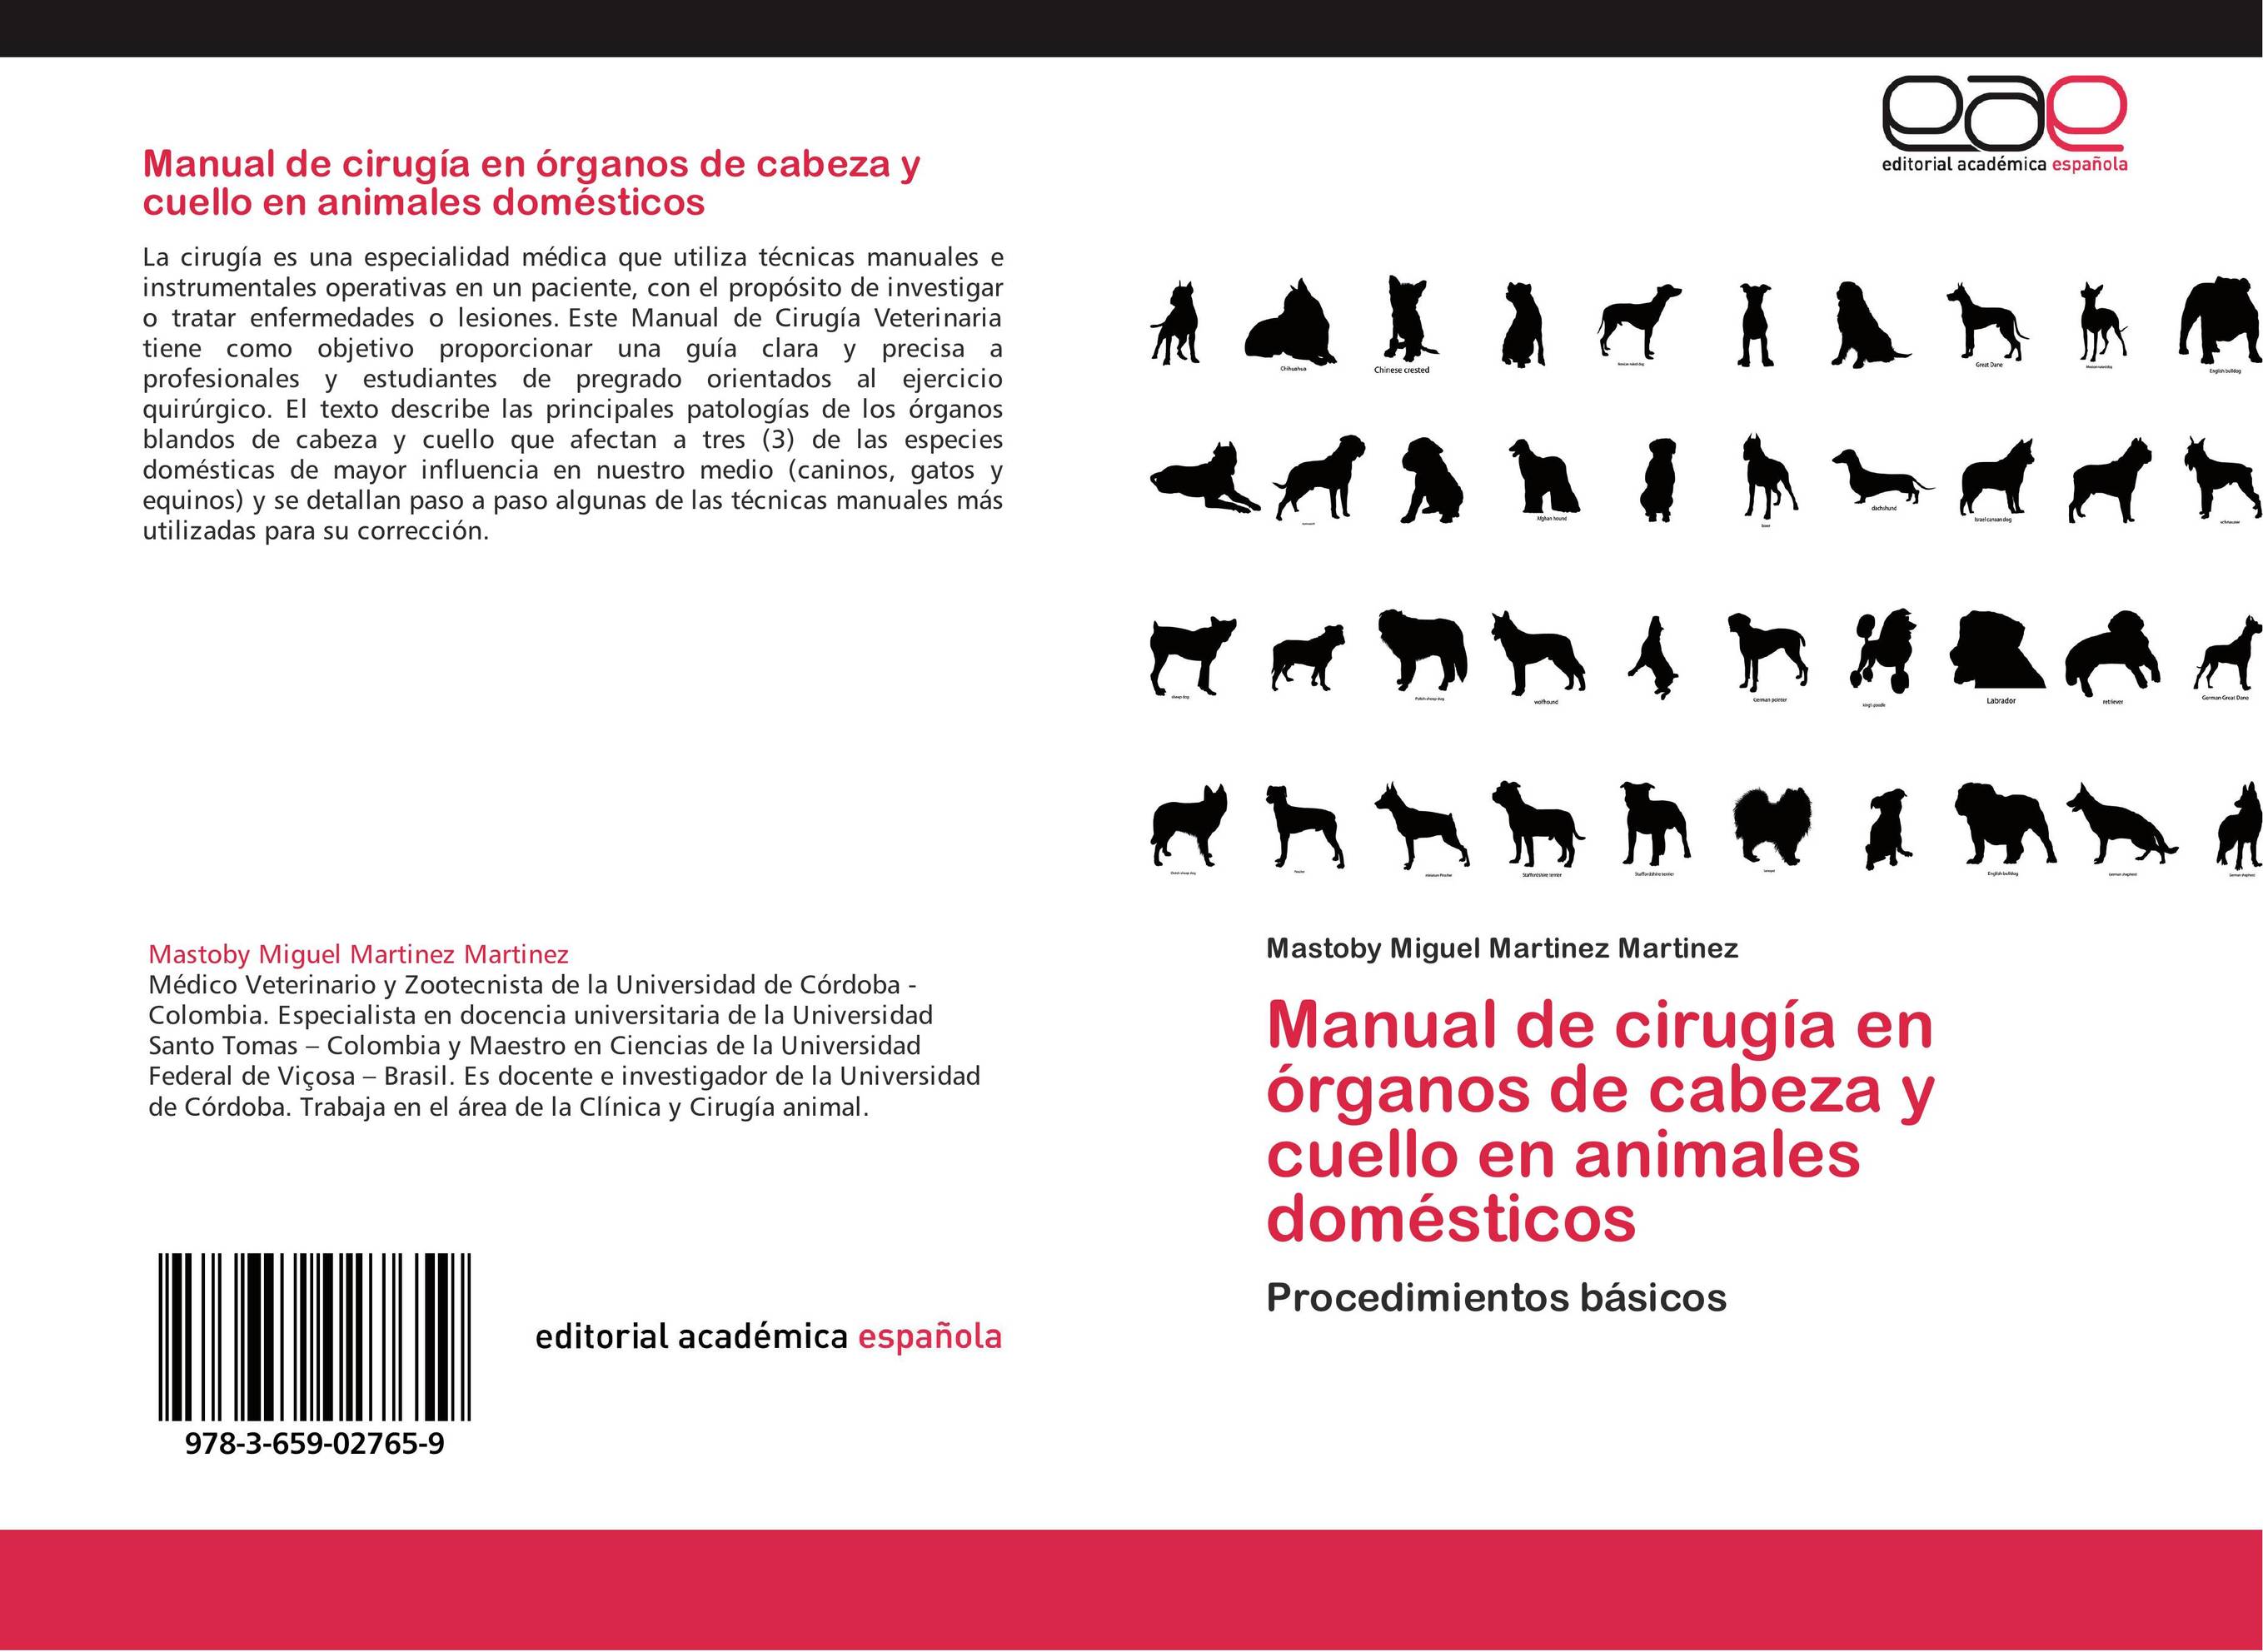 Manual de cirugía en órganos de cabeza y cuello en animales domésticos